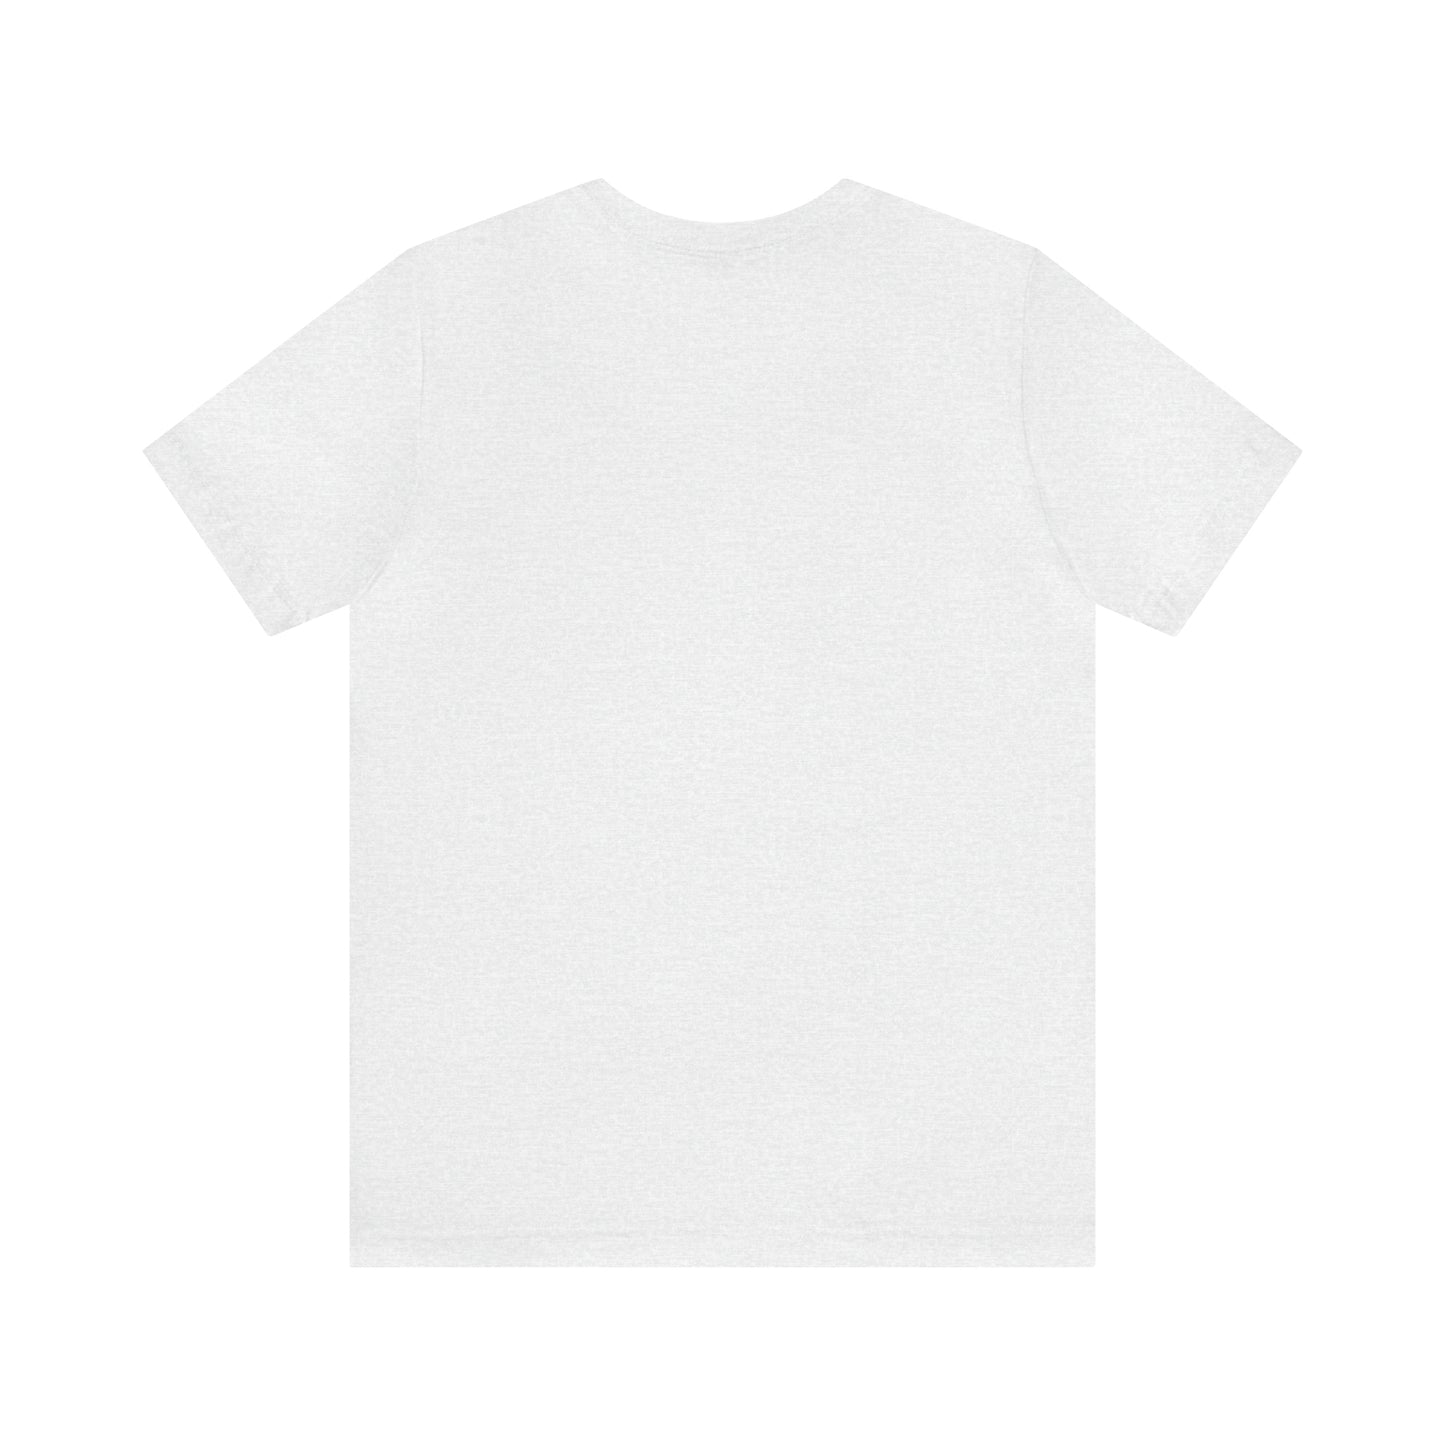 Leominster, Mass Pickleball Short Sleeve T-Shirt